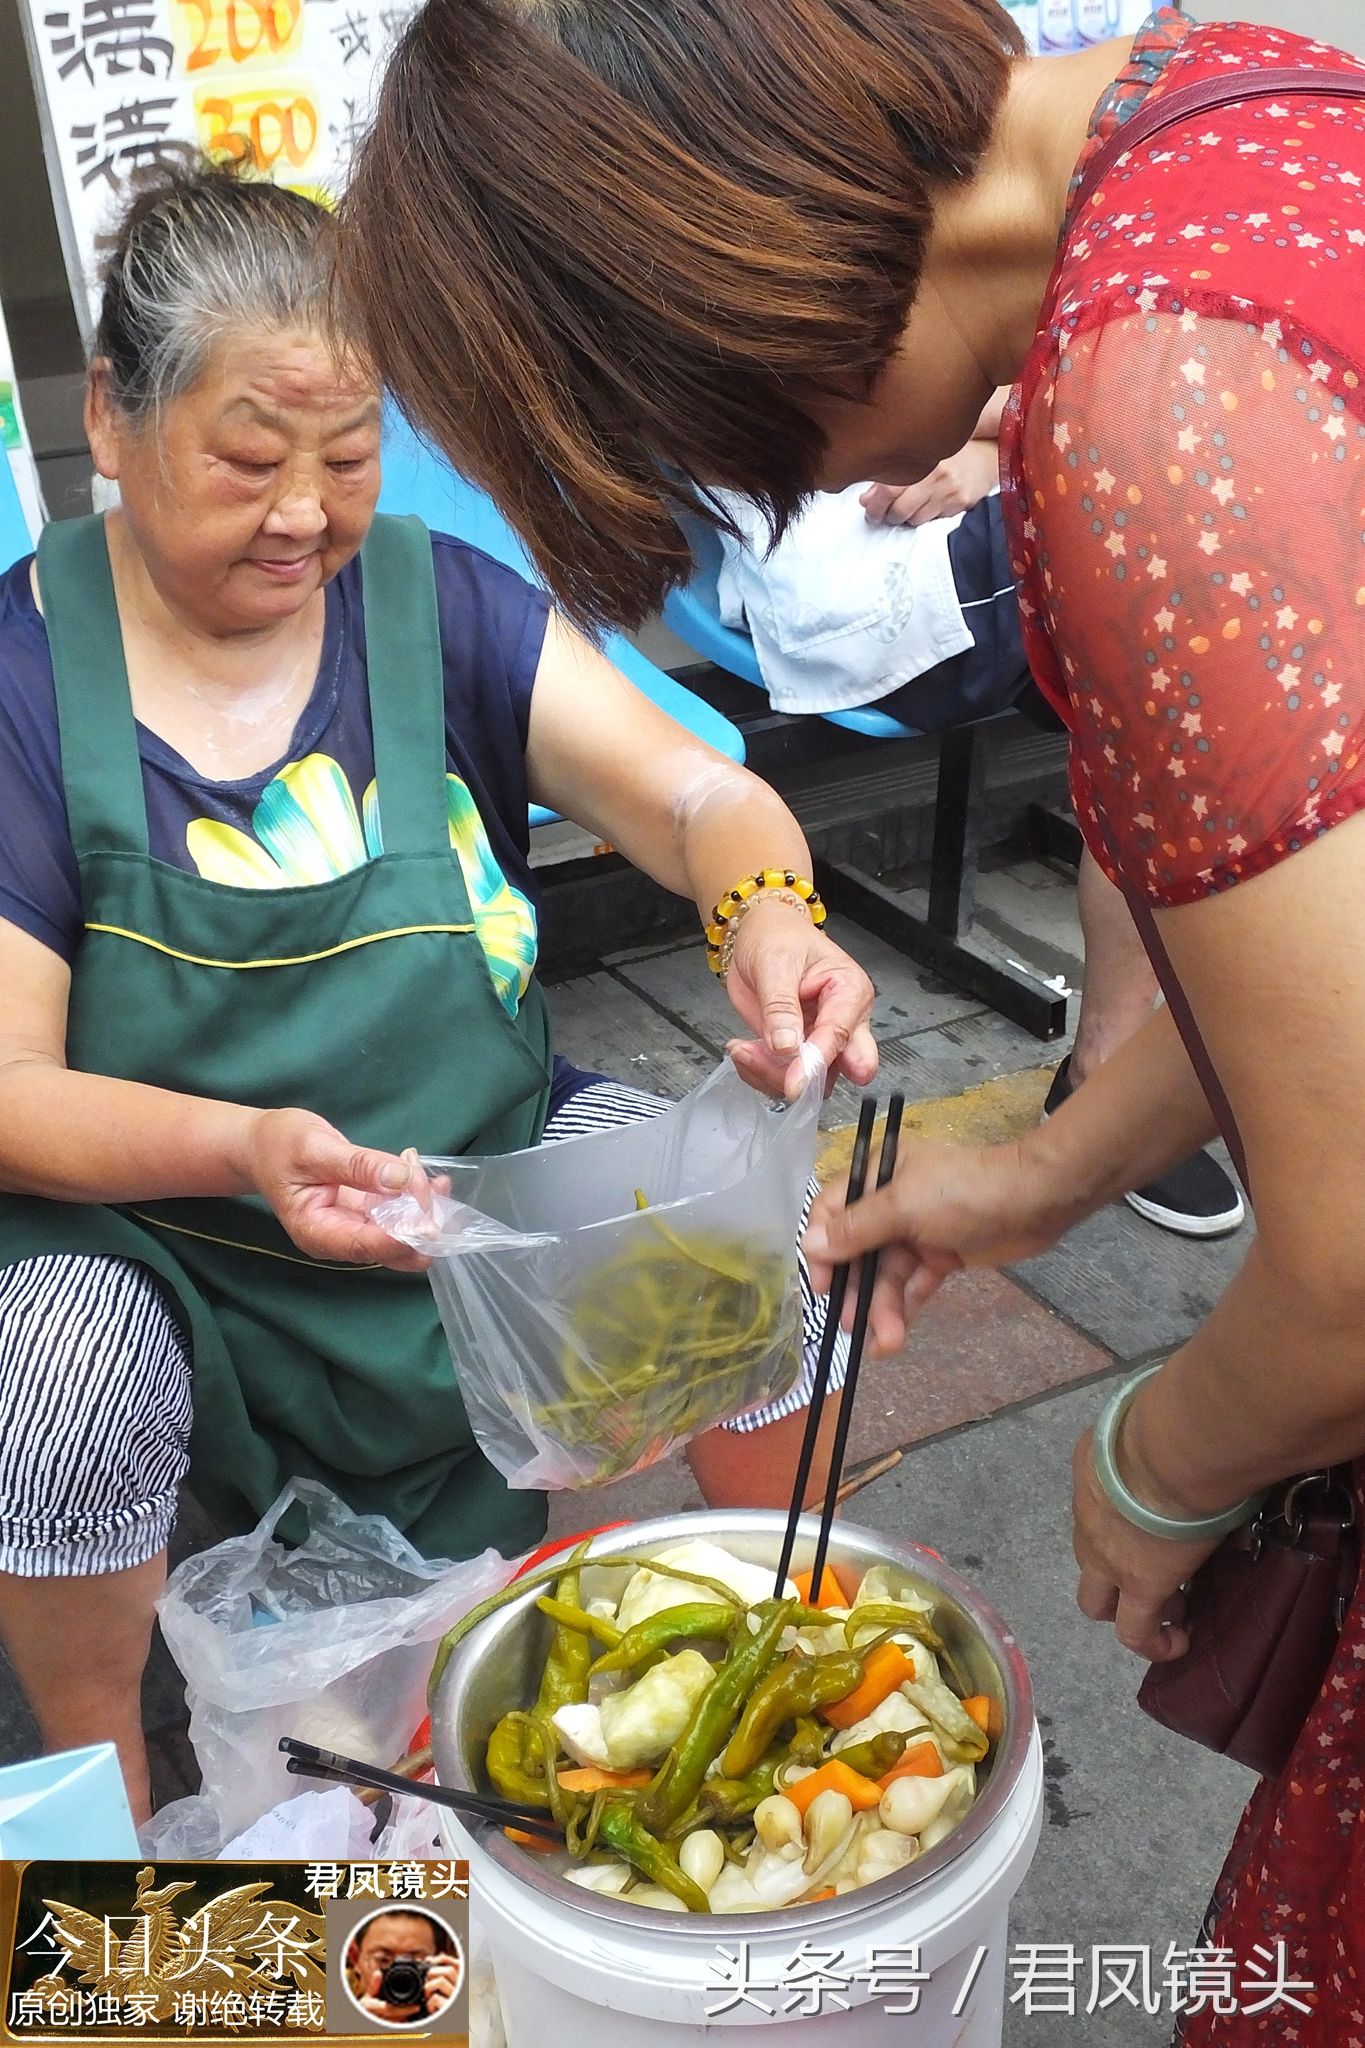 湖北宜昌:七旬老奶奶在菜市场卖自制泡菜,5元